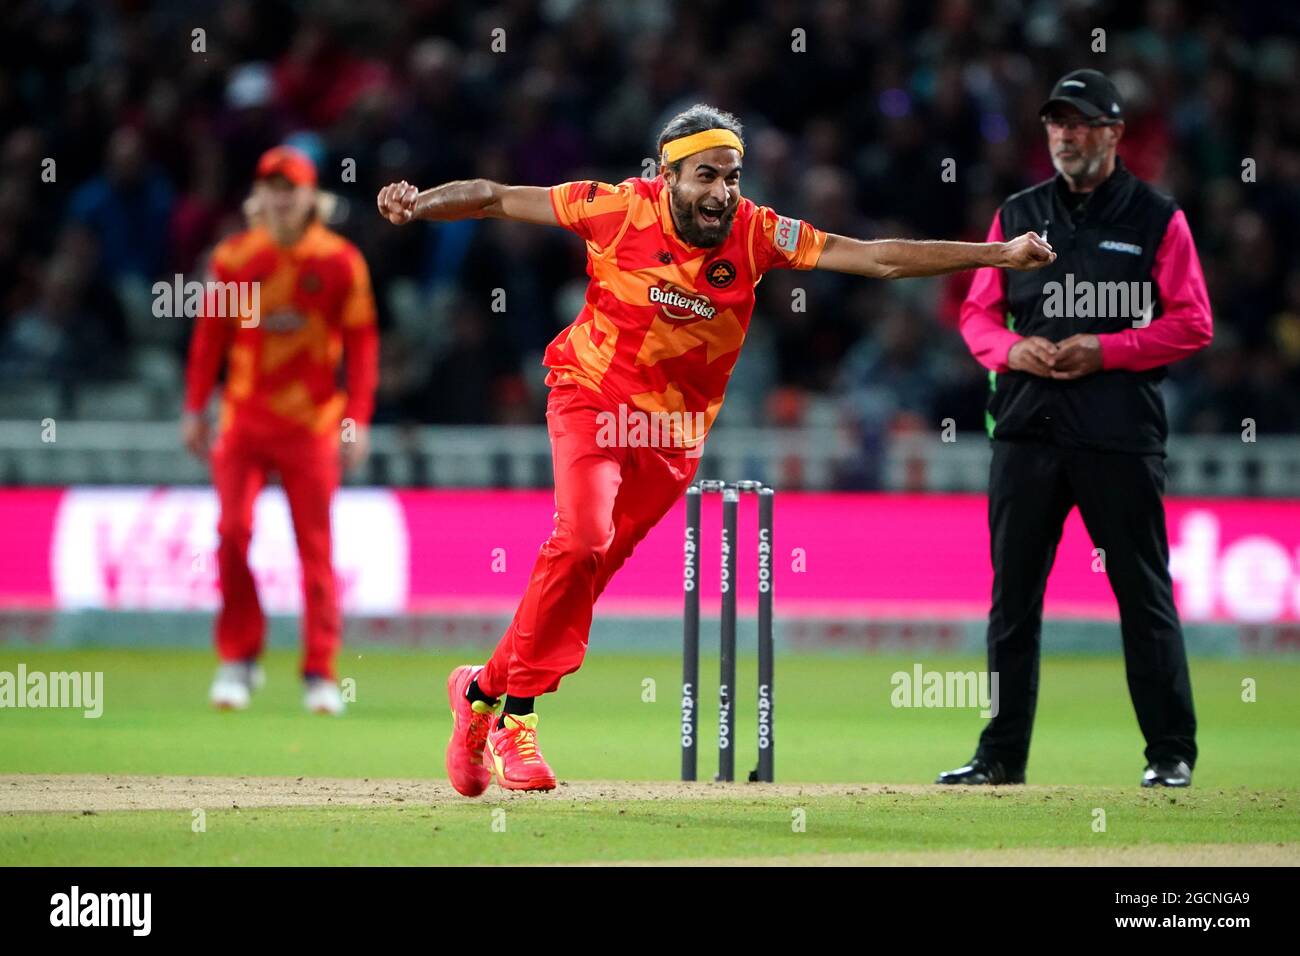 Imran Tahir von Birmingham Phoenix feiert, nachdem er das Wicket von David Payne gewonnen hat, um das Spiel während des 100-Matches in Edgbaston, Birmingham, zu gewinnen. Bilddatum: Montag, 9. August 2021. Stockfoto